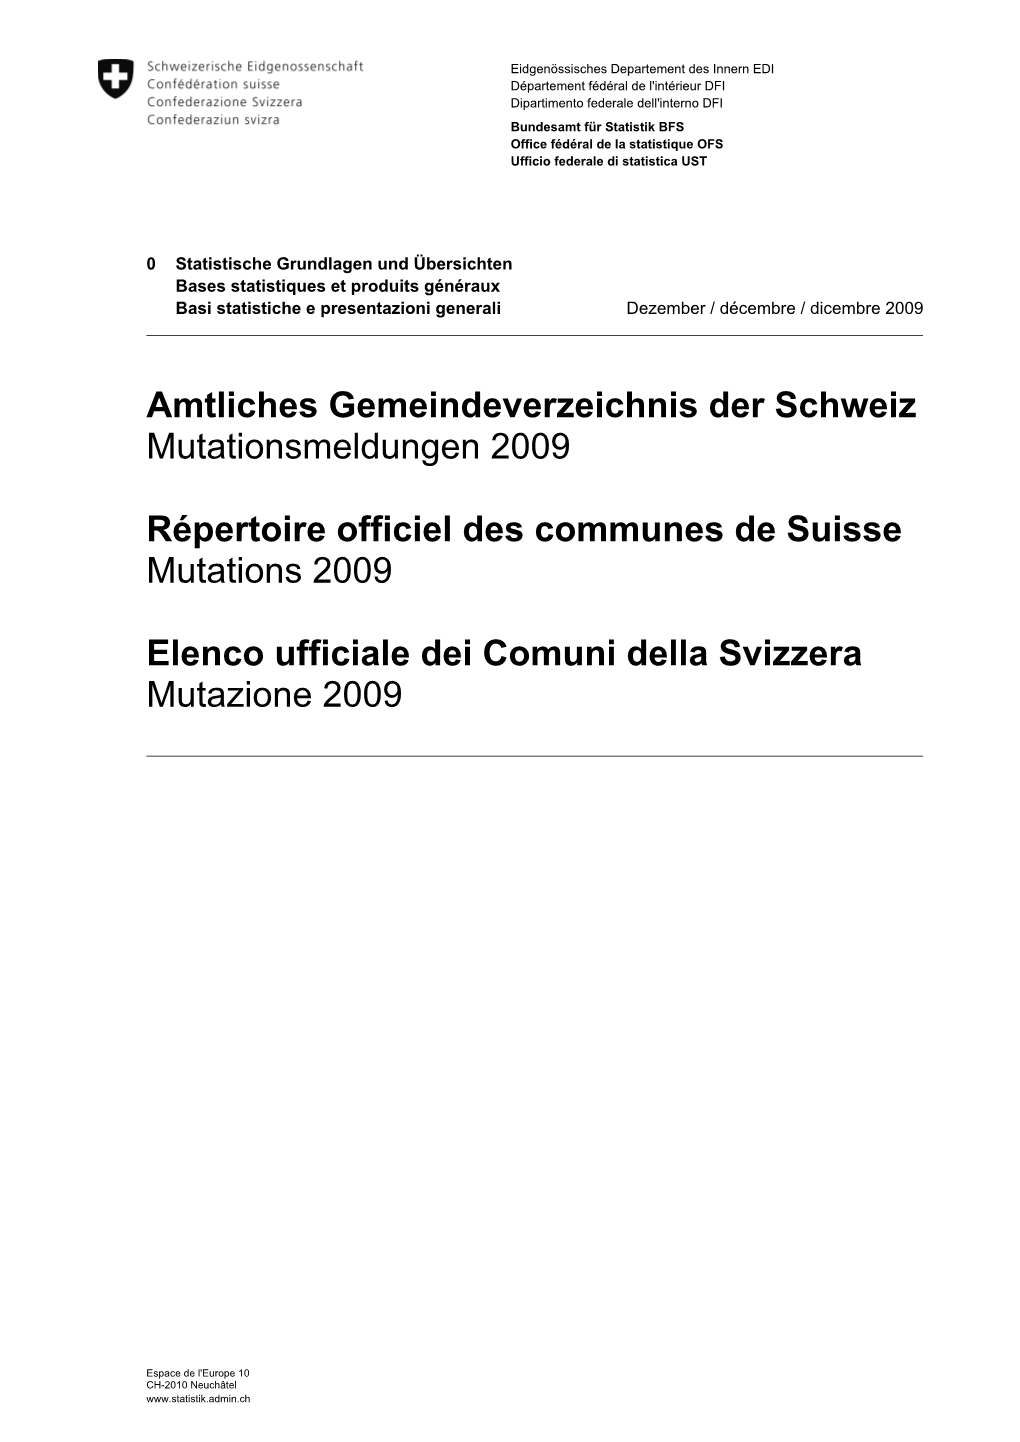 Amtliches Gemeindeverzeichnis Der Schweiz Mutationsmeldungen 2009